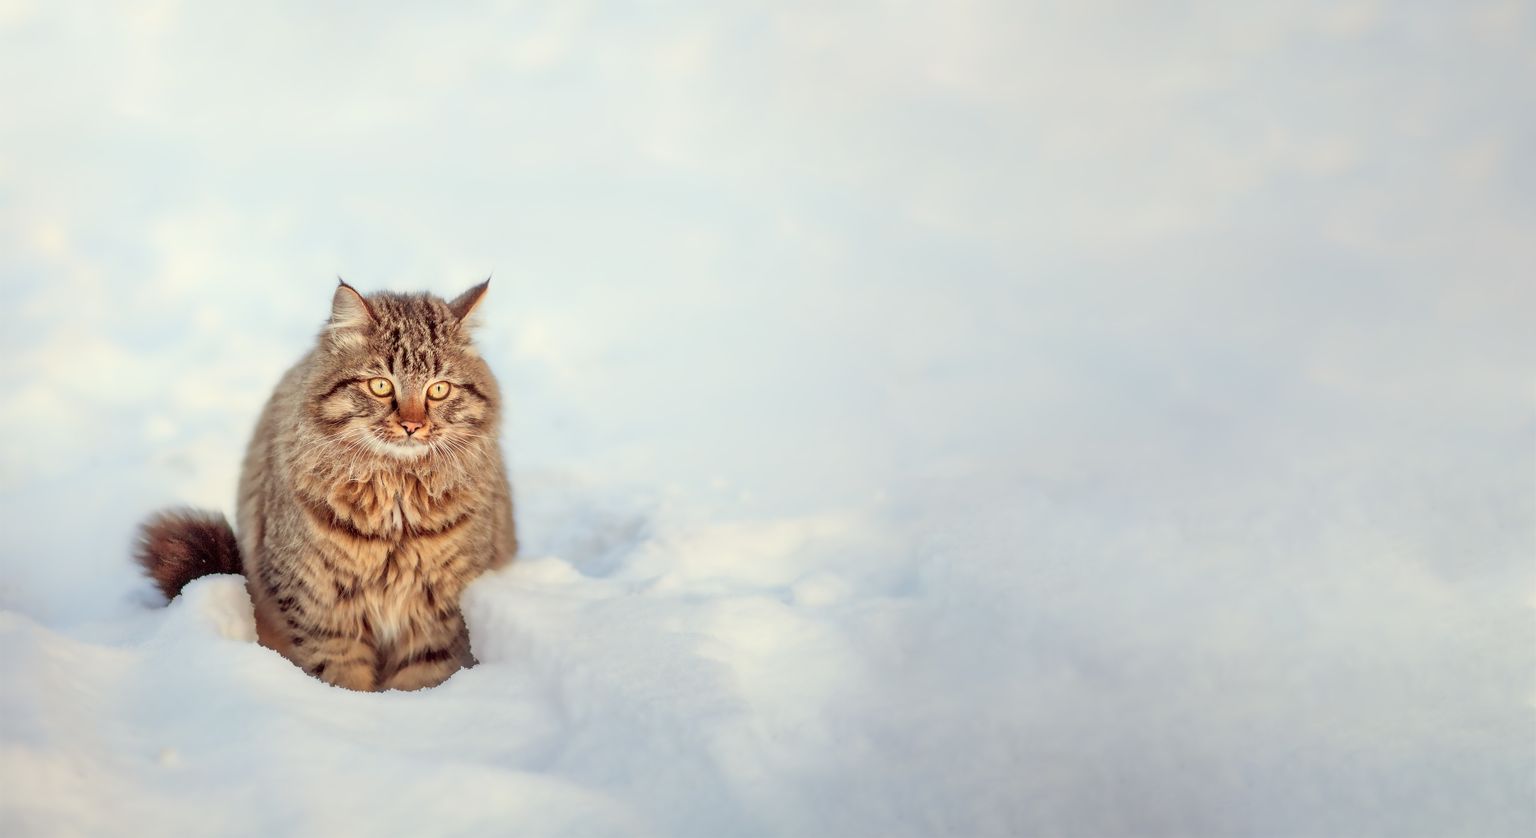 Кот в снежную зиму. Иллюстративное фото